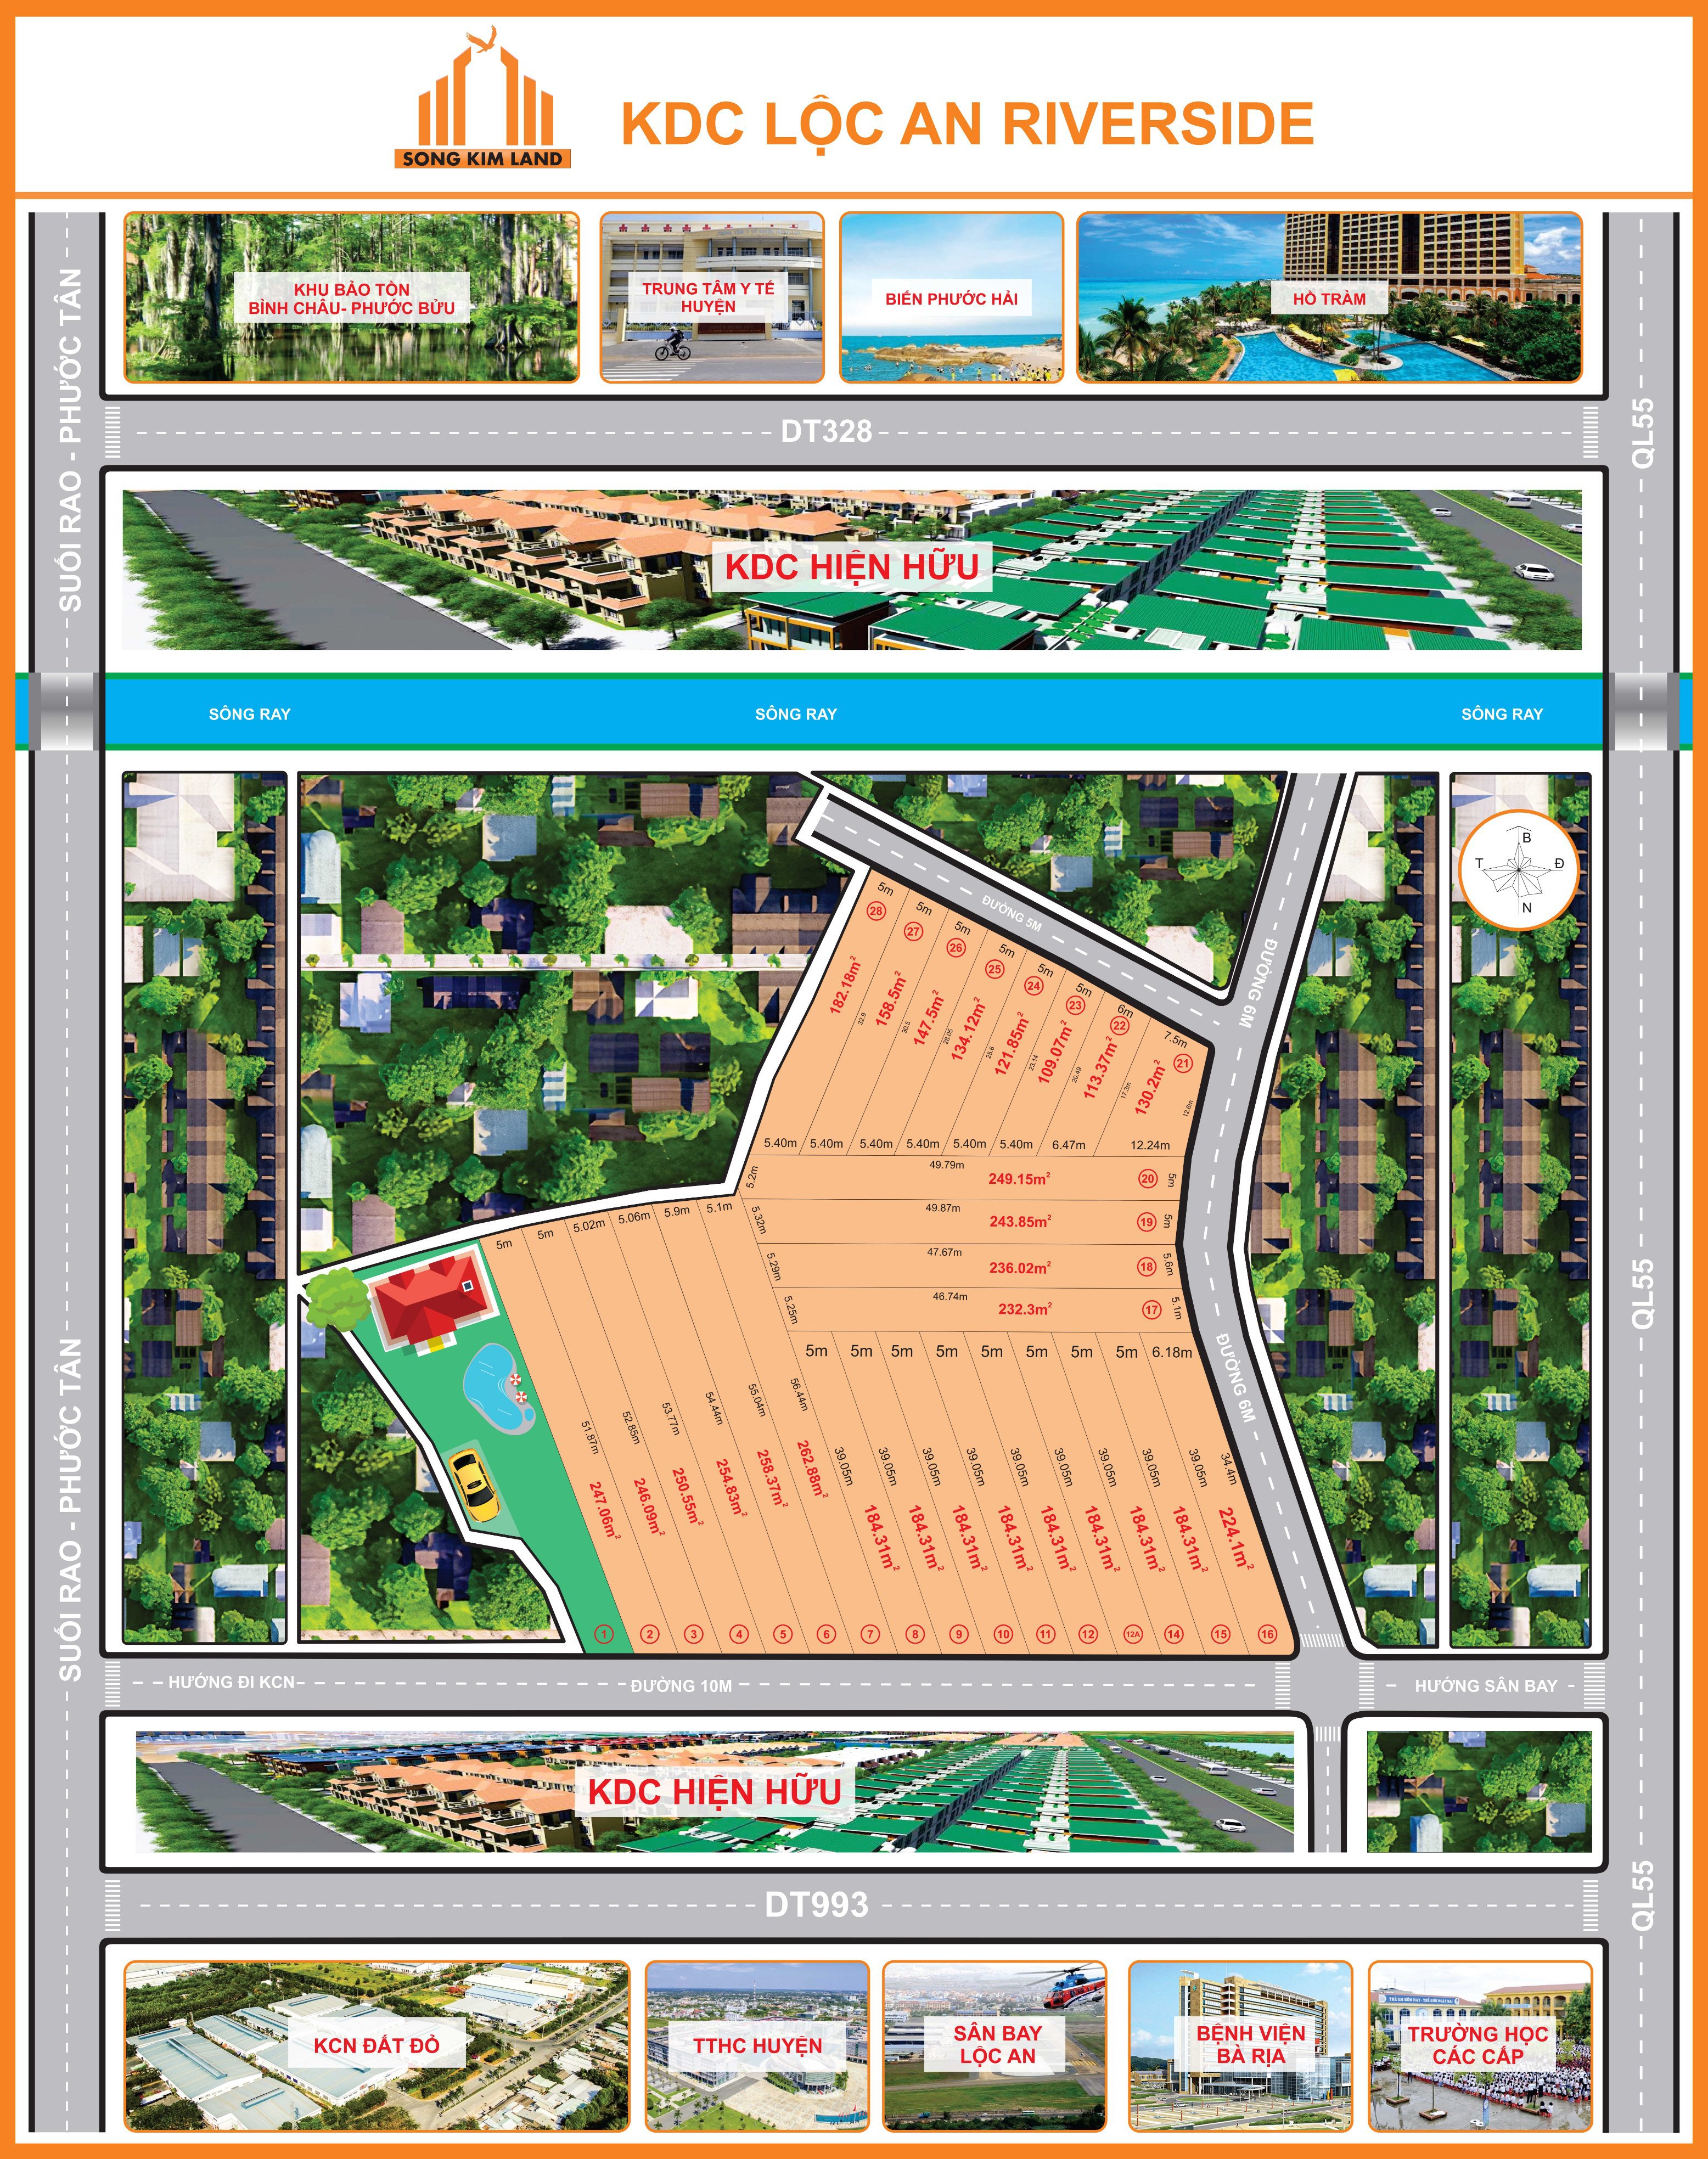 Khu dân cư - đất nền - dự án - ký gửi - mua bán - pháp lý - nhà phố - shphouse - Khu dân cư Lộc An Riverside Xã Láng Dài - Huyện Đất Đỏ